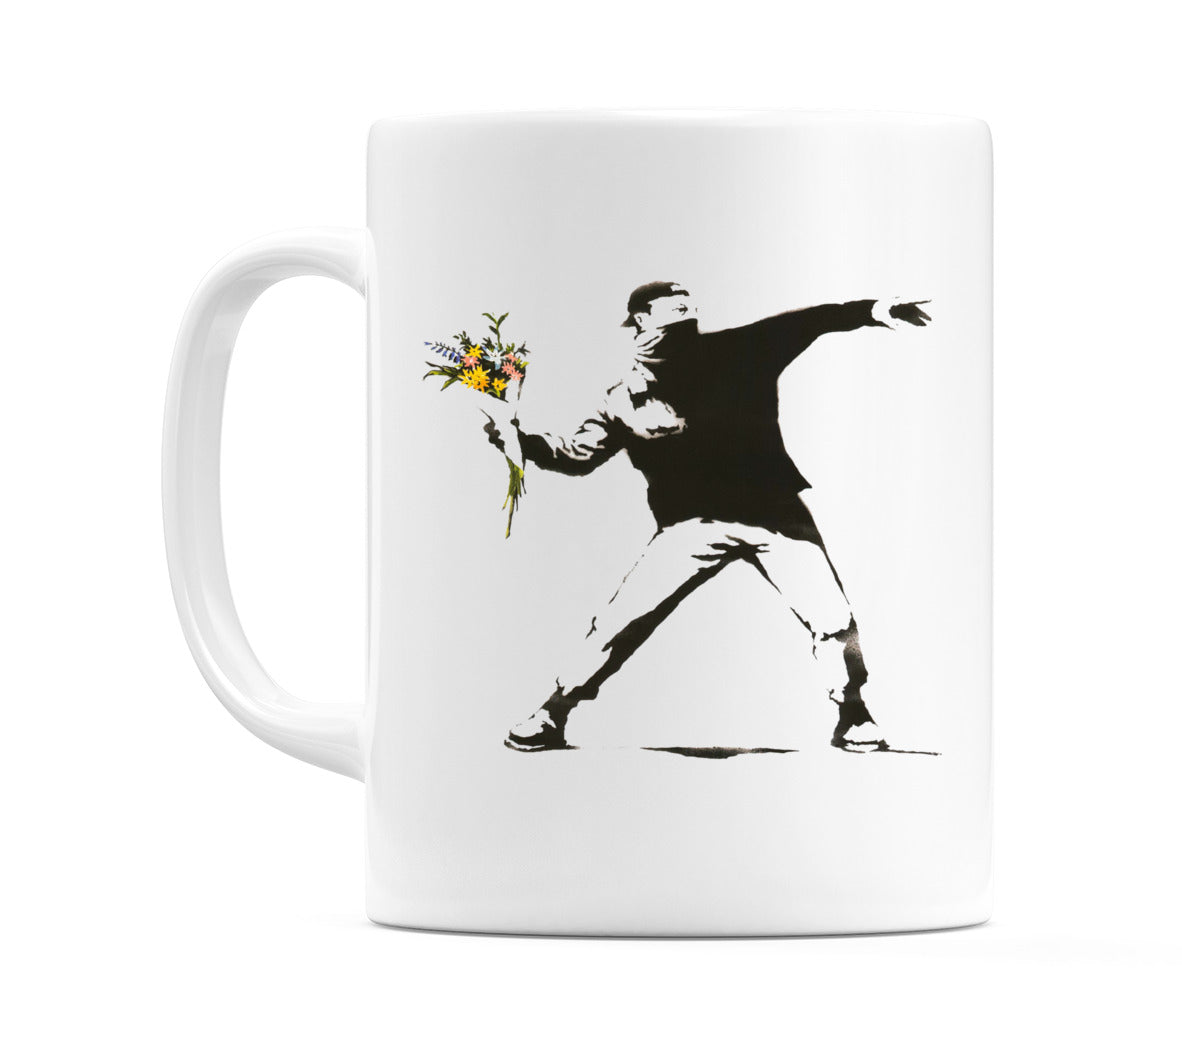 Flower Thrower (Banksy Inspired) Mug